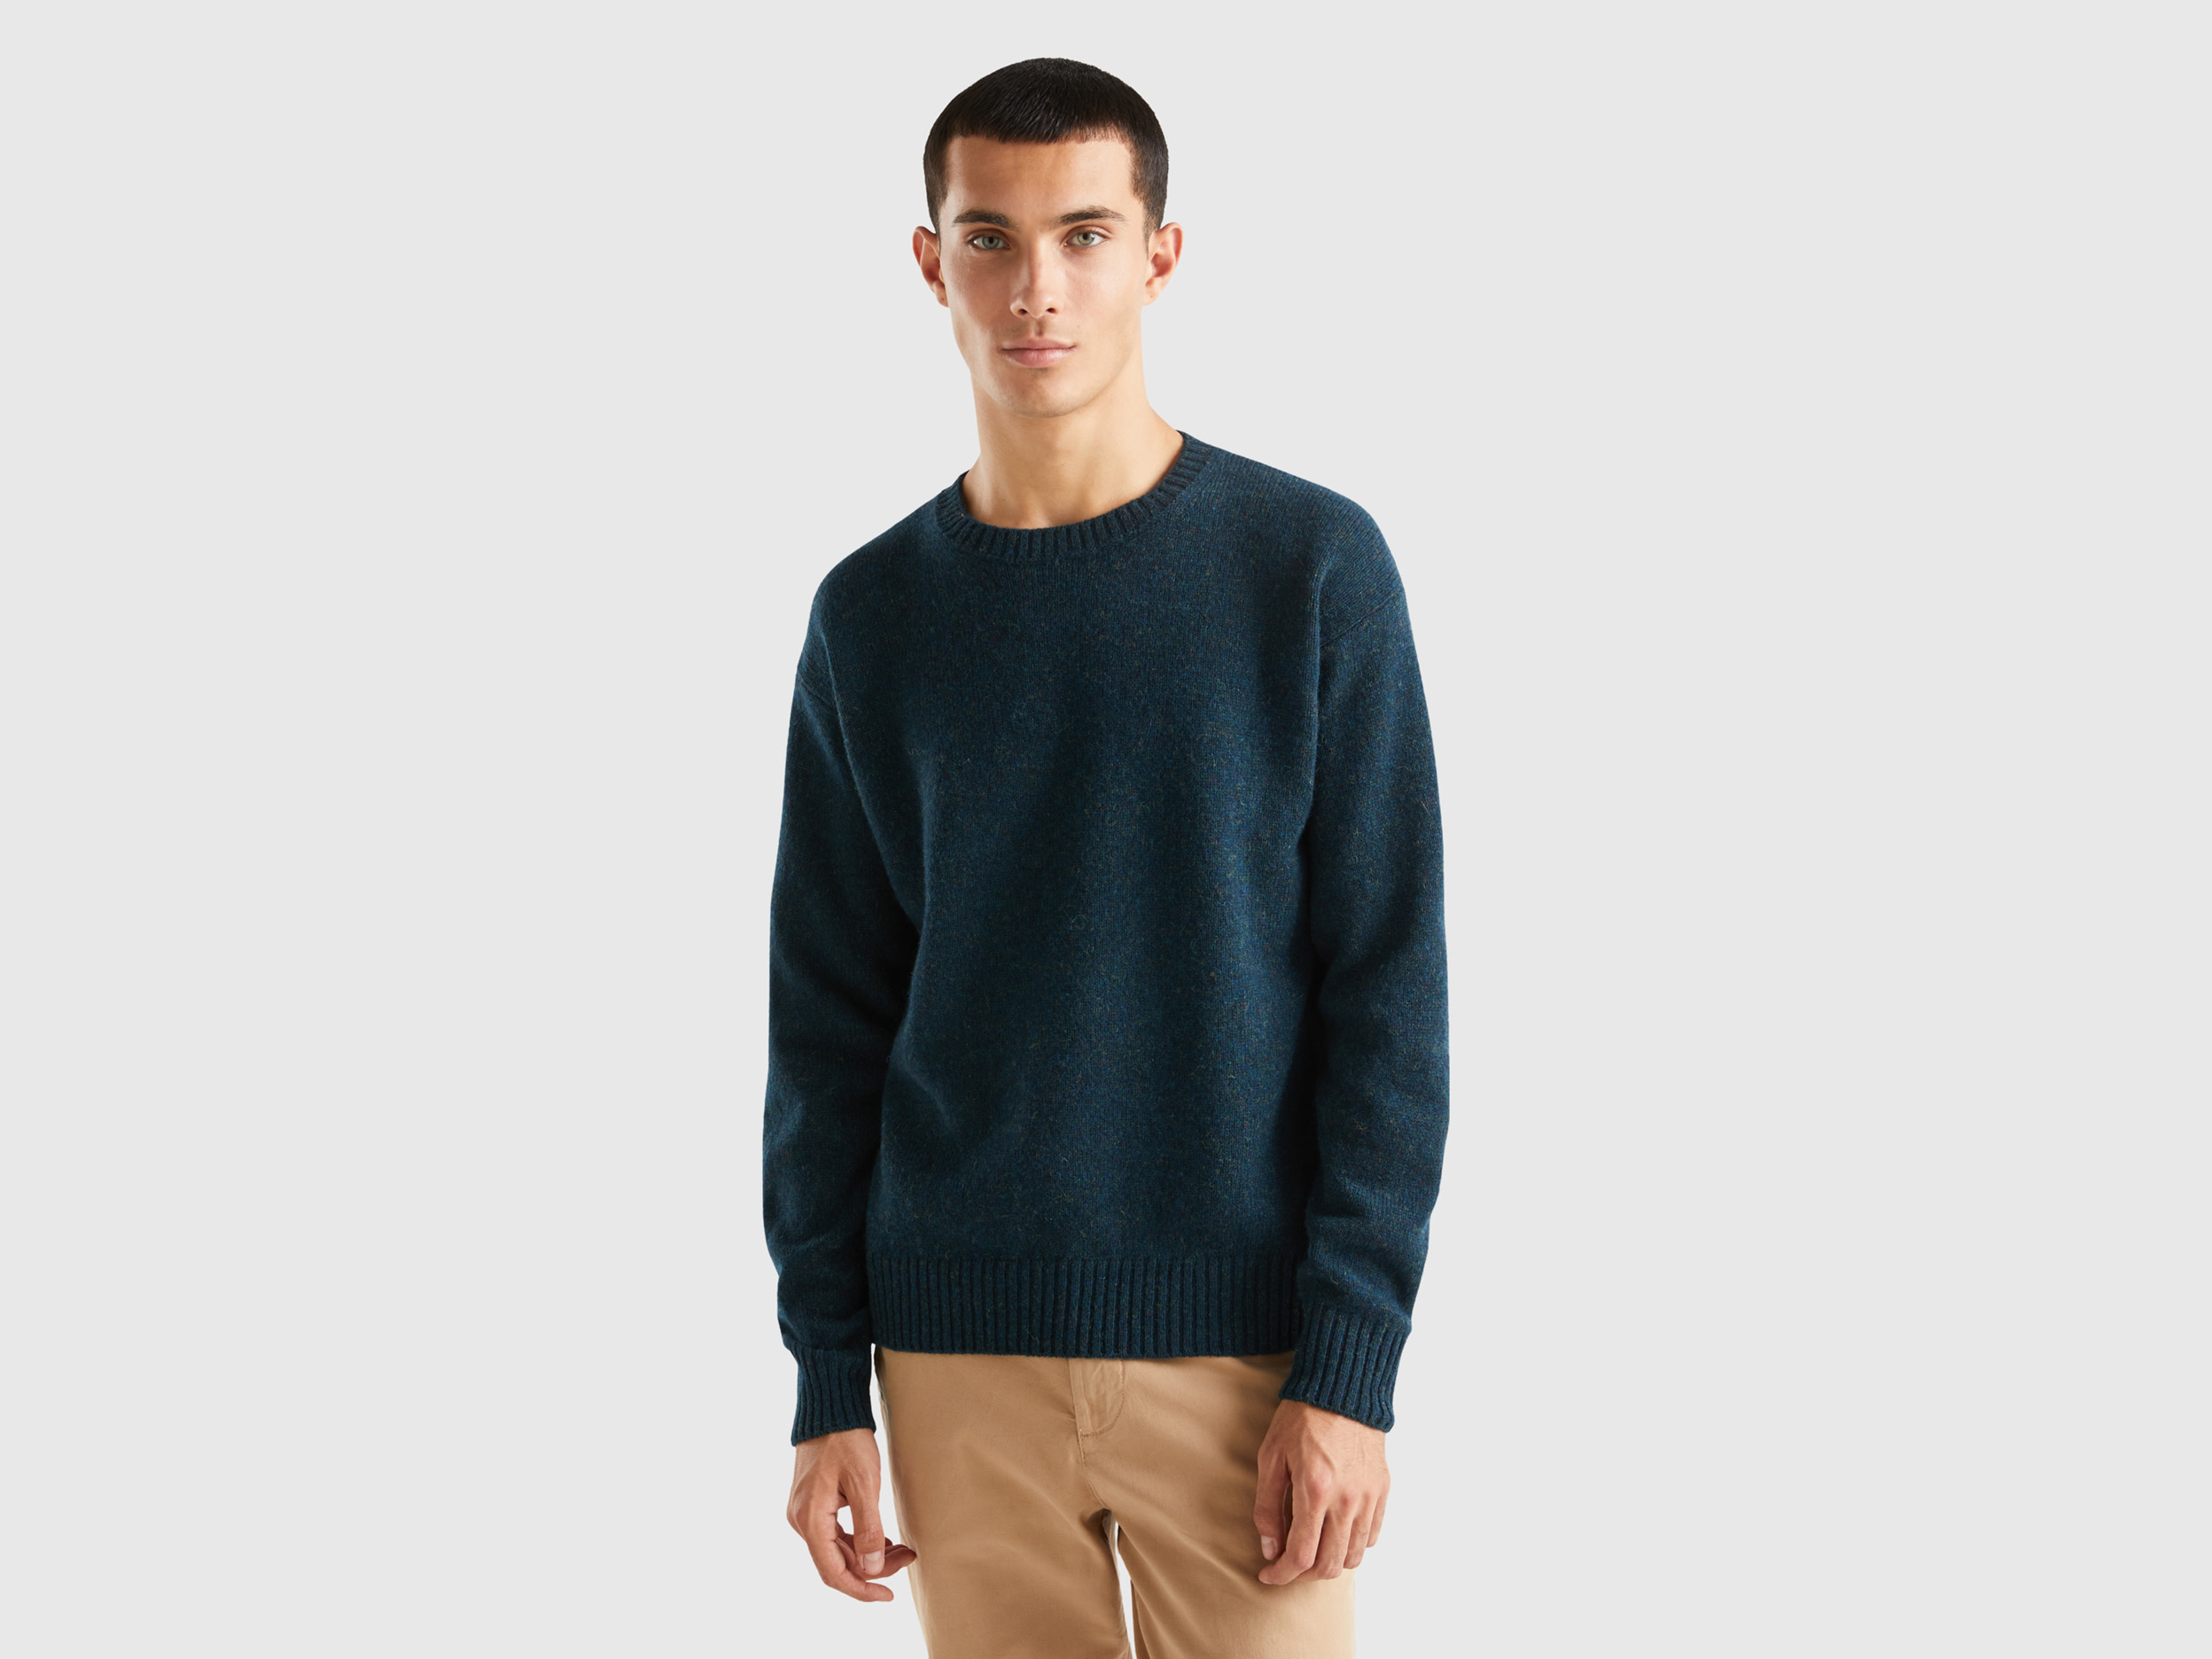 Benetton, Crew Neck Sweater In Pure Shetland Wool, size L, Dark Blue, Men